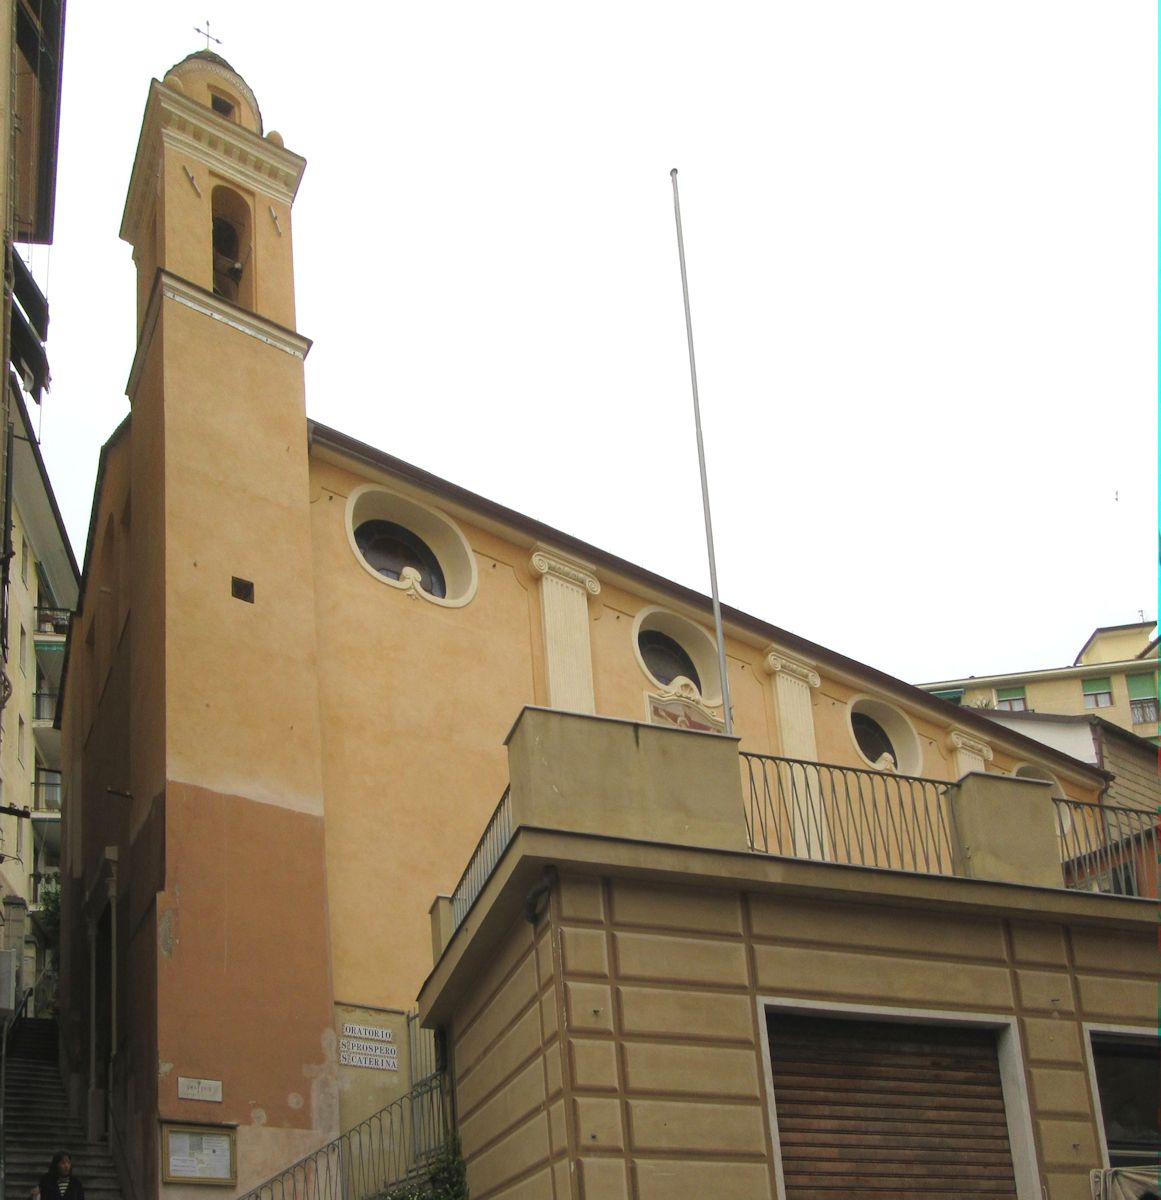 Prosper geweihtes Oratorium im Stadtkern von Camogli